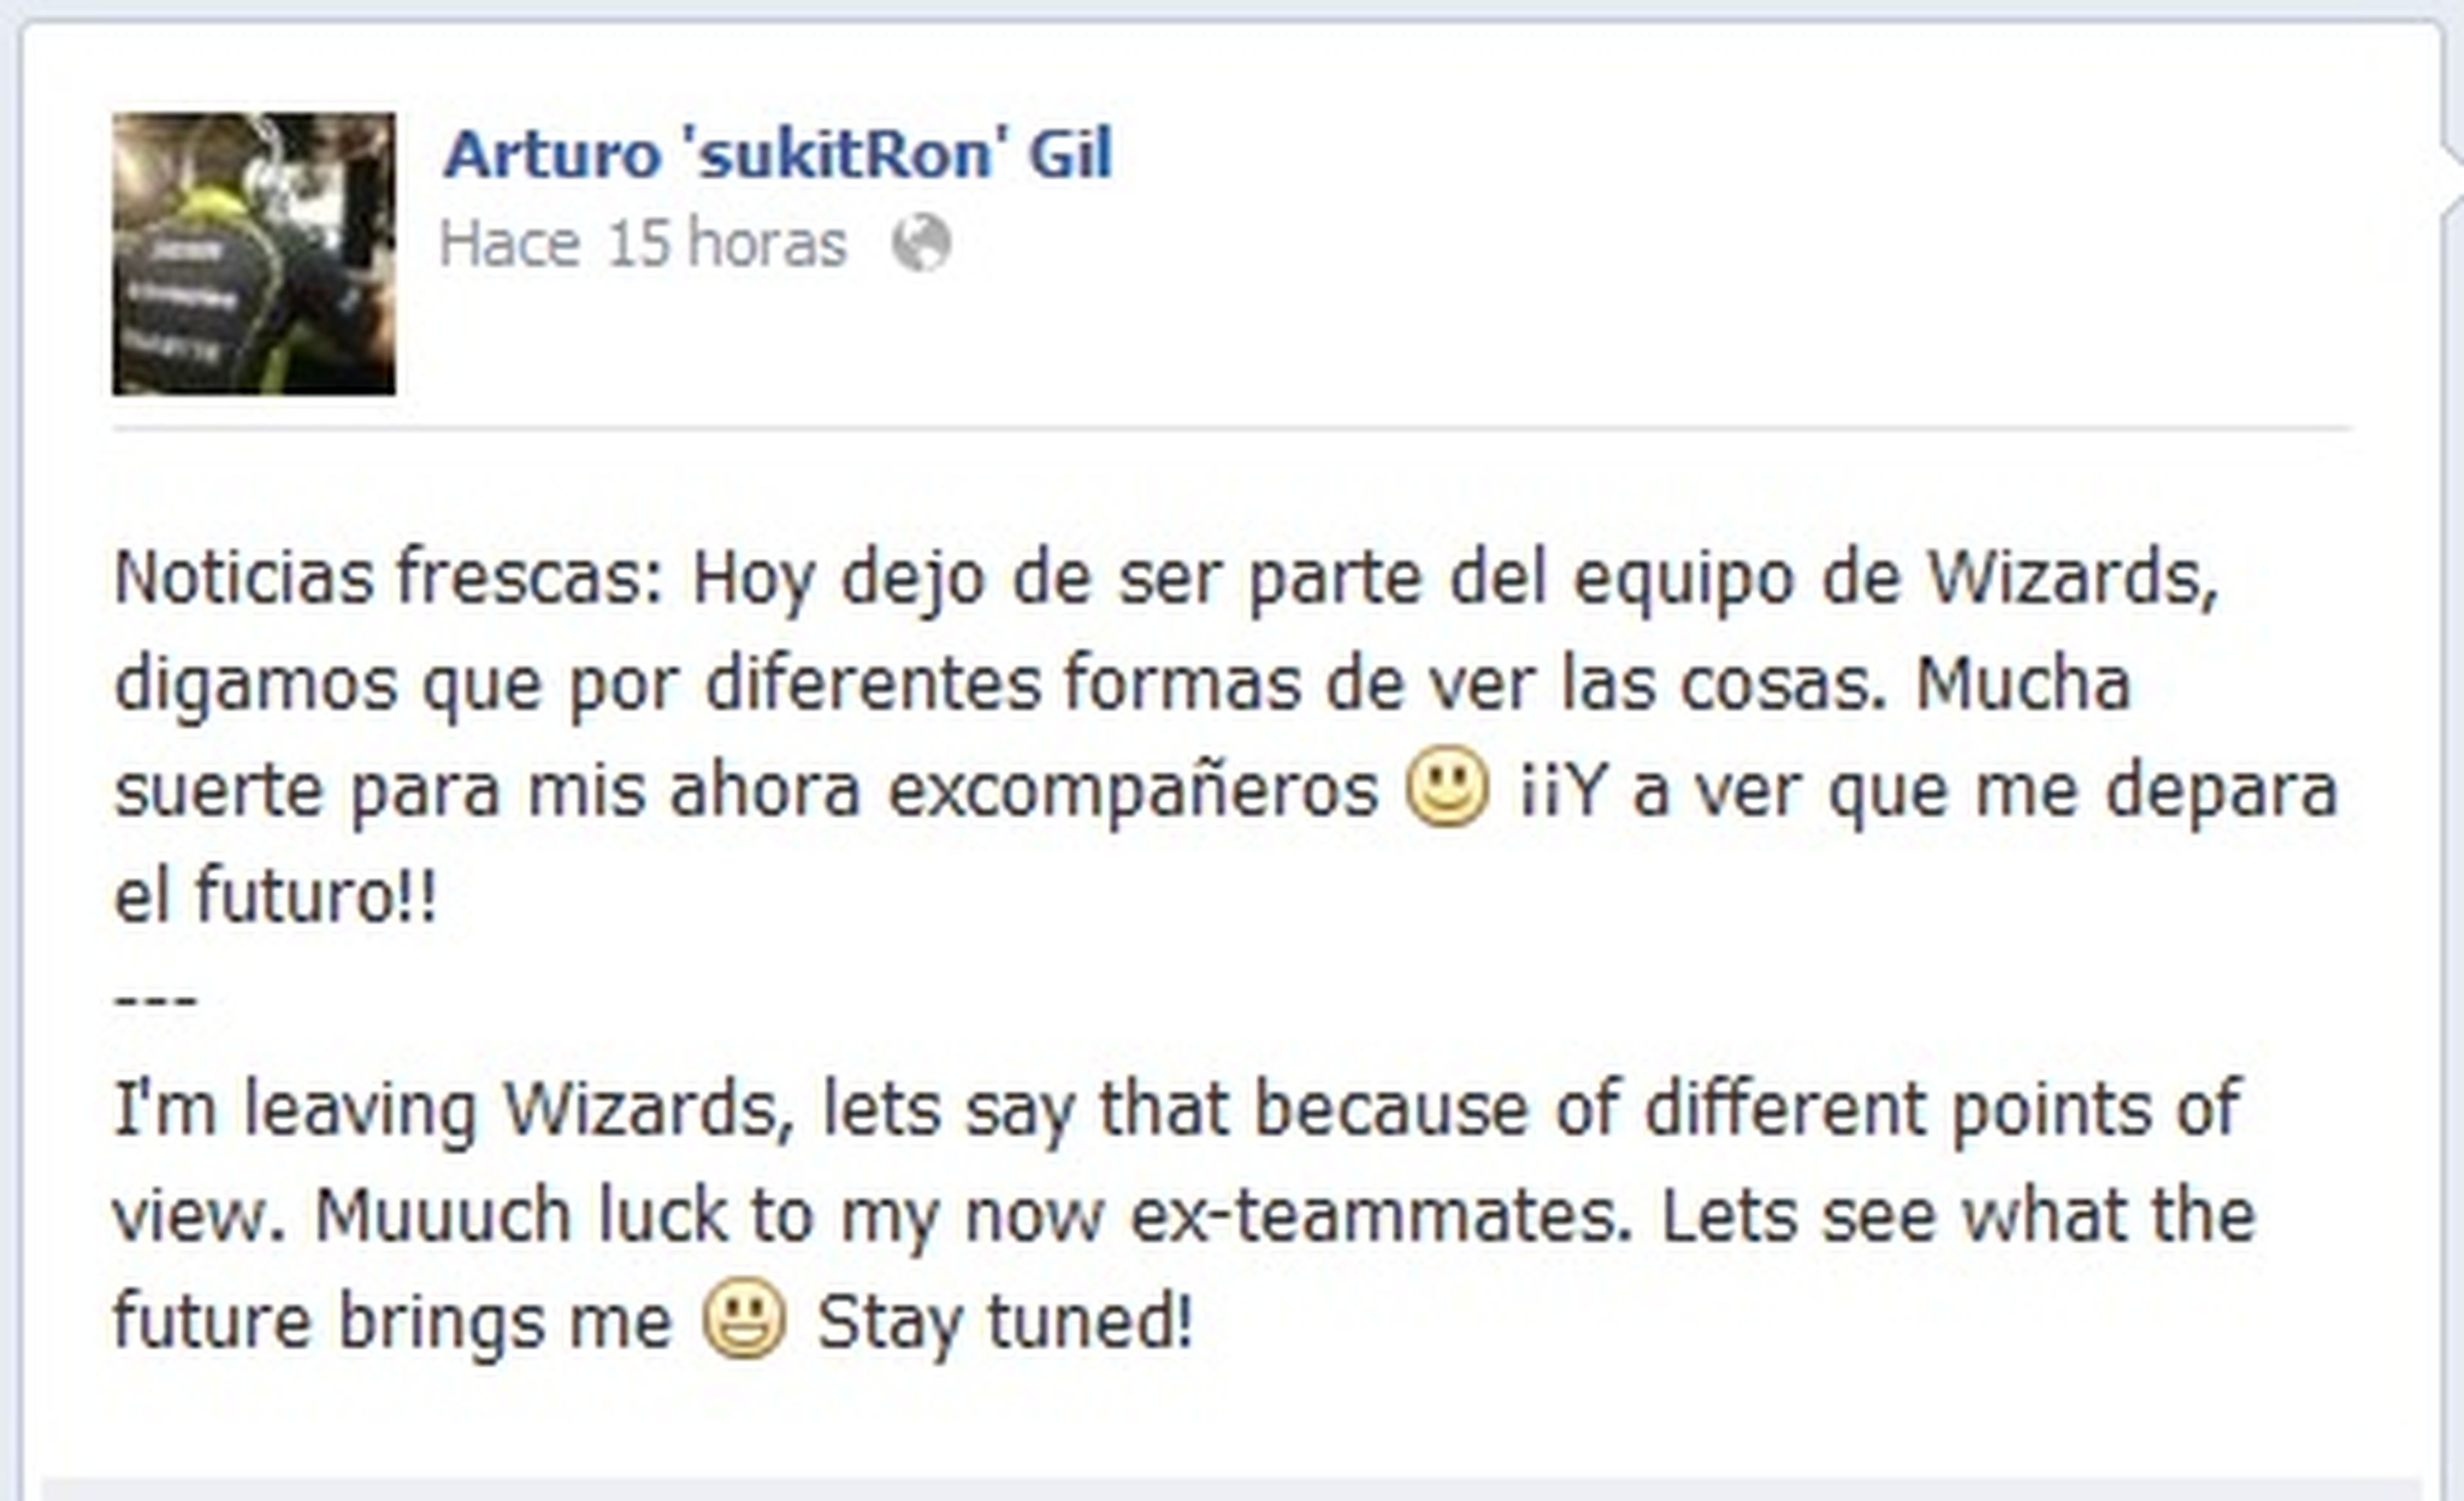 'sukitRon': "Dejo de ser parte del equipo de Wizards"